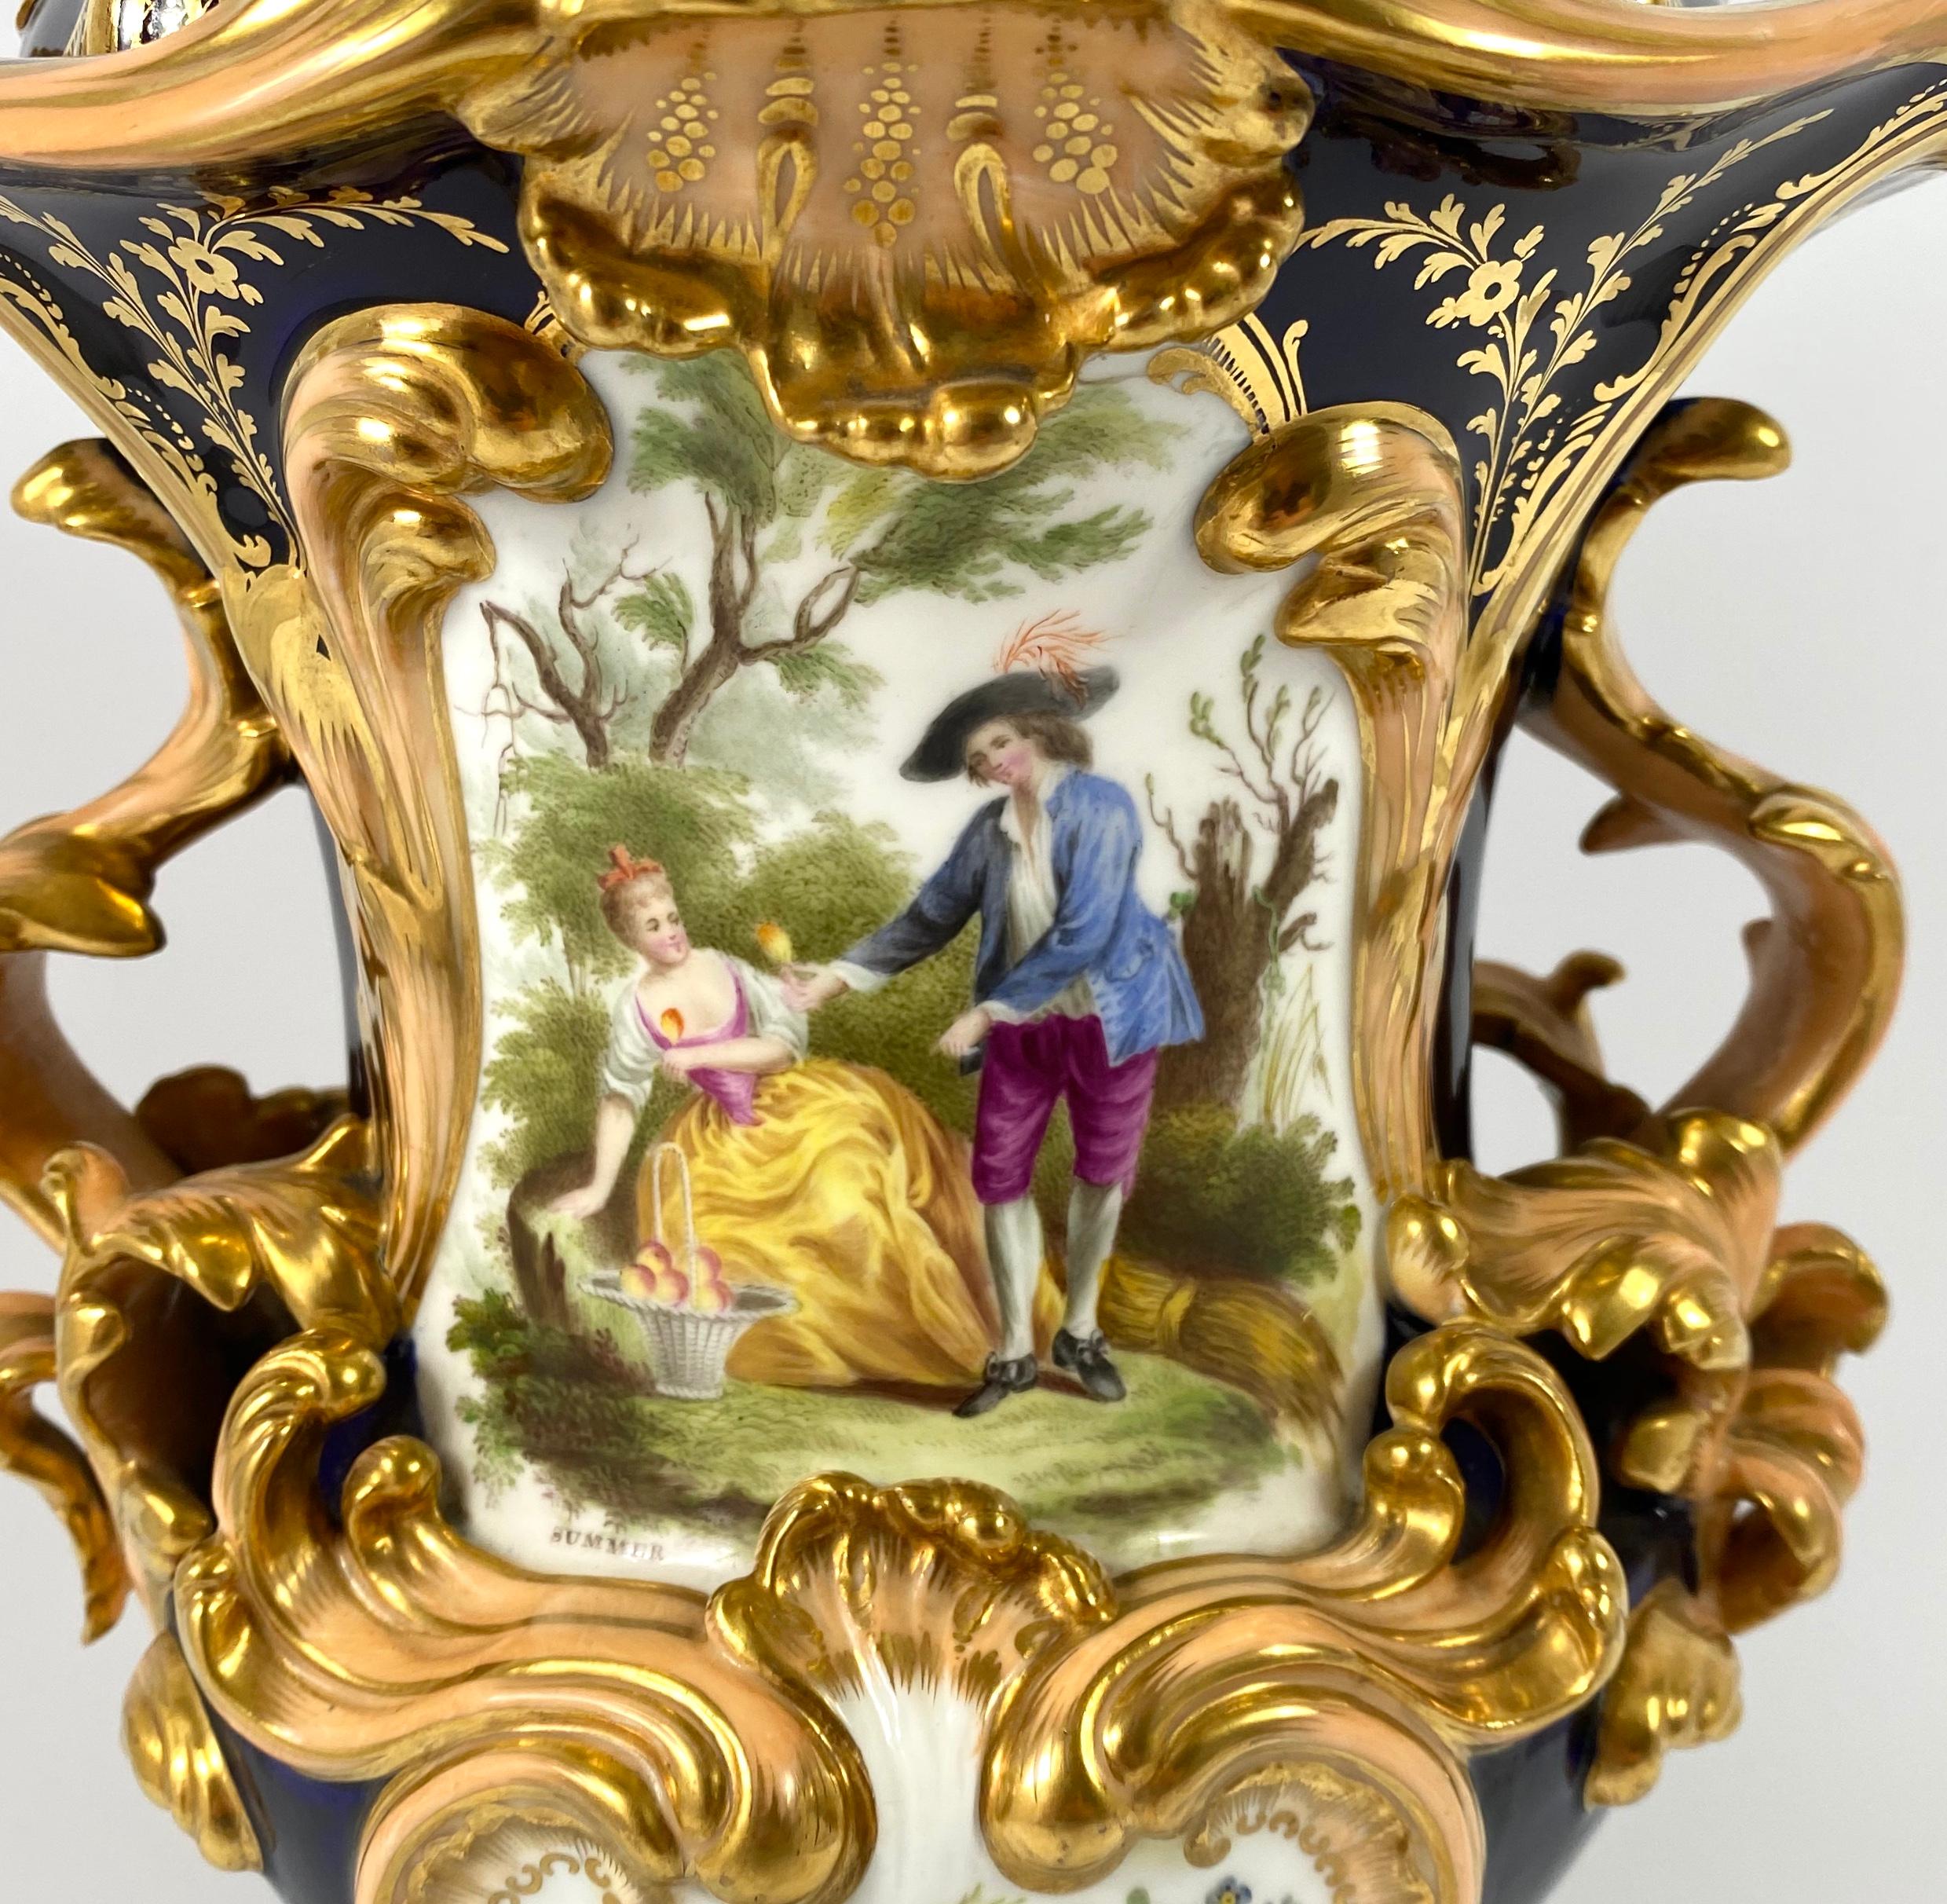 Fine pair Minton porcelain vases & covers, ‘Four Seasons’ c. 1830. 3